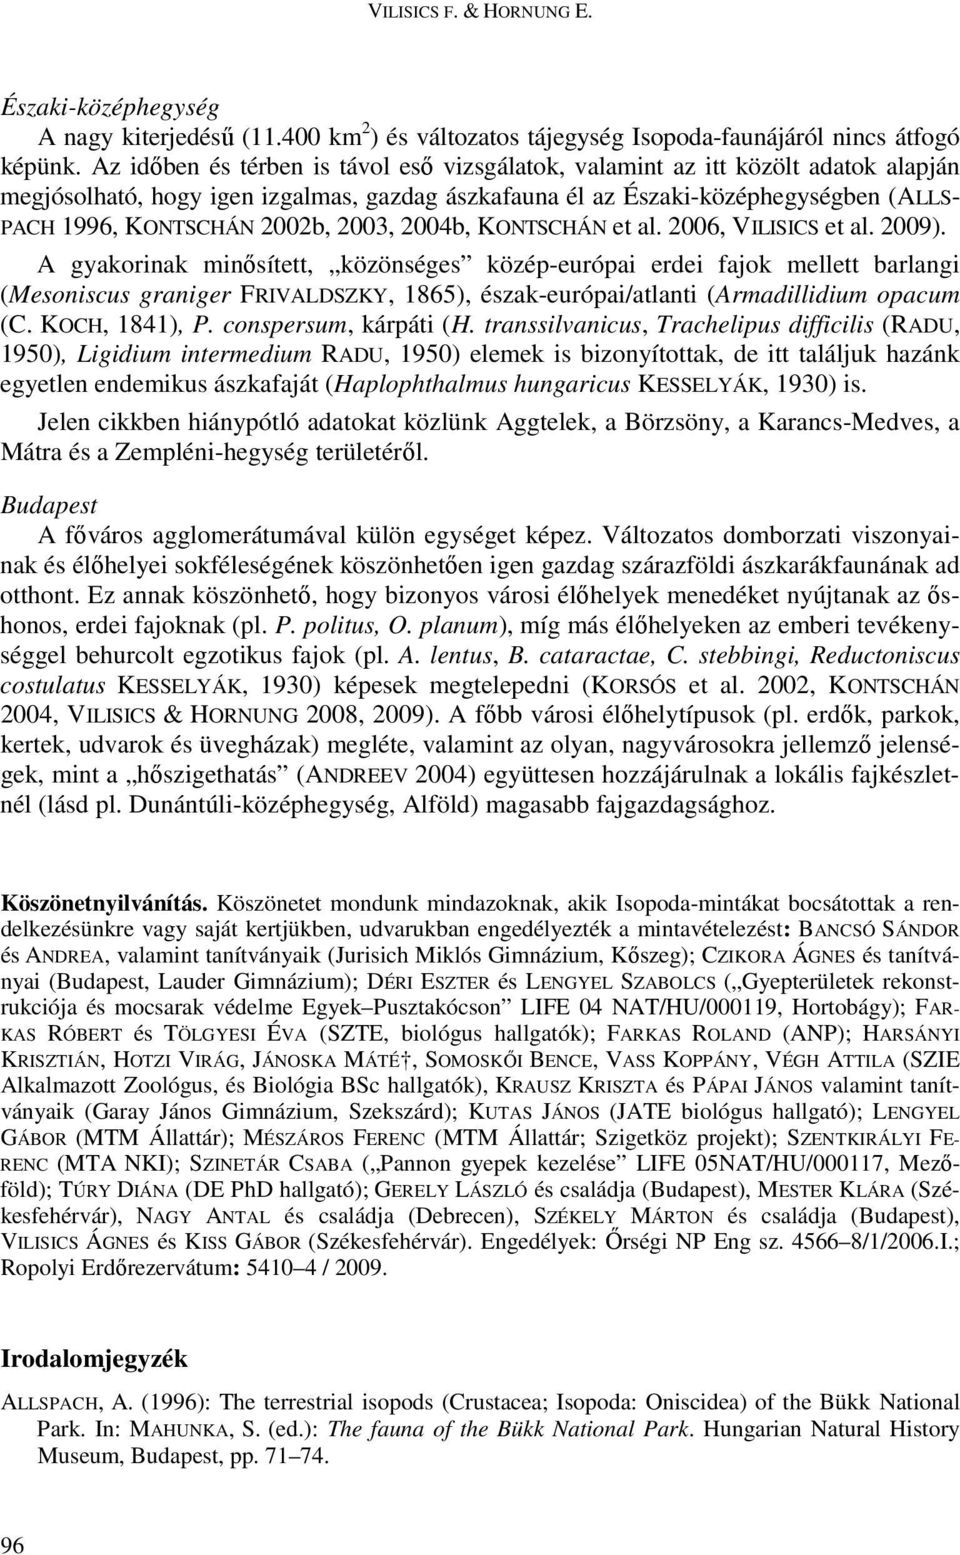 2003, 2004b, KONTSCHÁN et al. 2006, VILISICS et al. 2009).